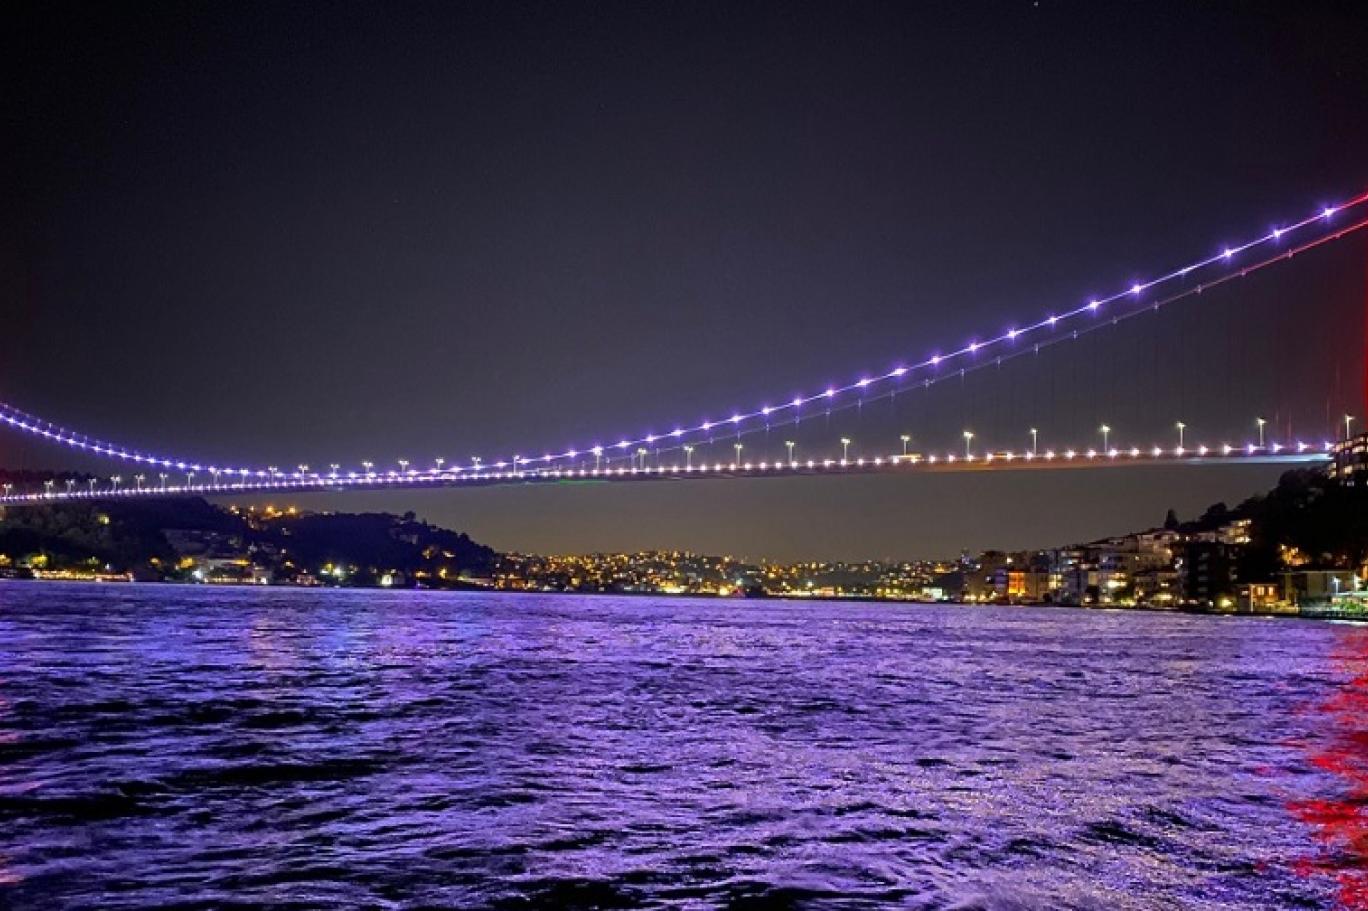 İstanbullu belediyelerin sosyal medyada 'en güzel manzara' atışması